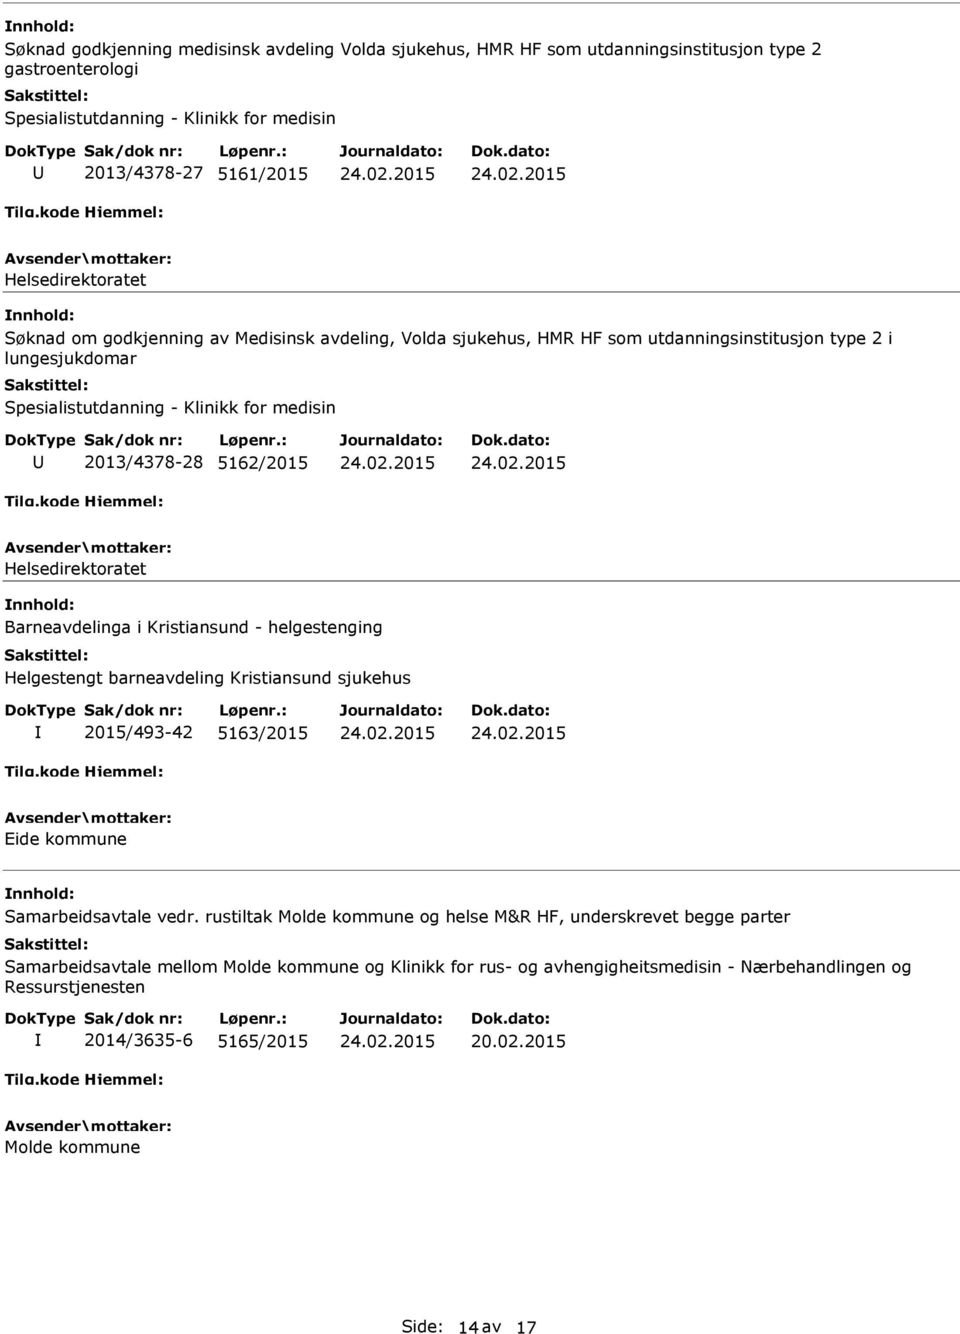 Helsedirektoratet Barneavdelinga i Kristiansund - helgestenging Helgestengt barneavdeling Kristiansund sjukehus 2015/493-42 5163/2015 Eide kommune Samarbeidsavtale vedr.